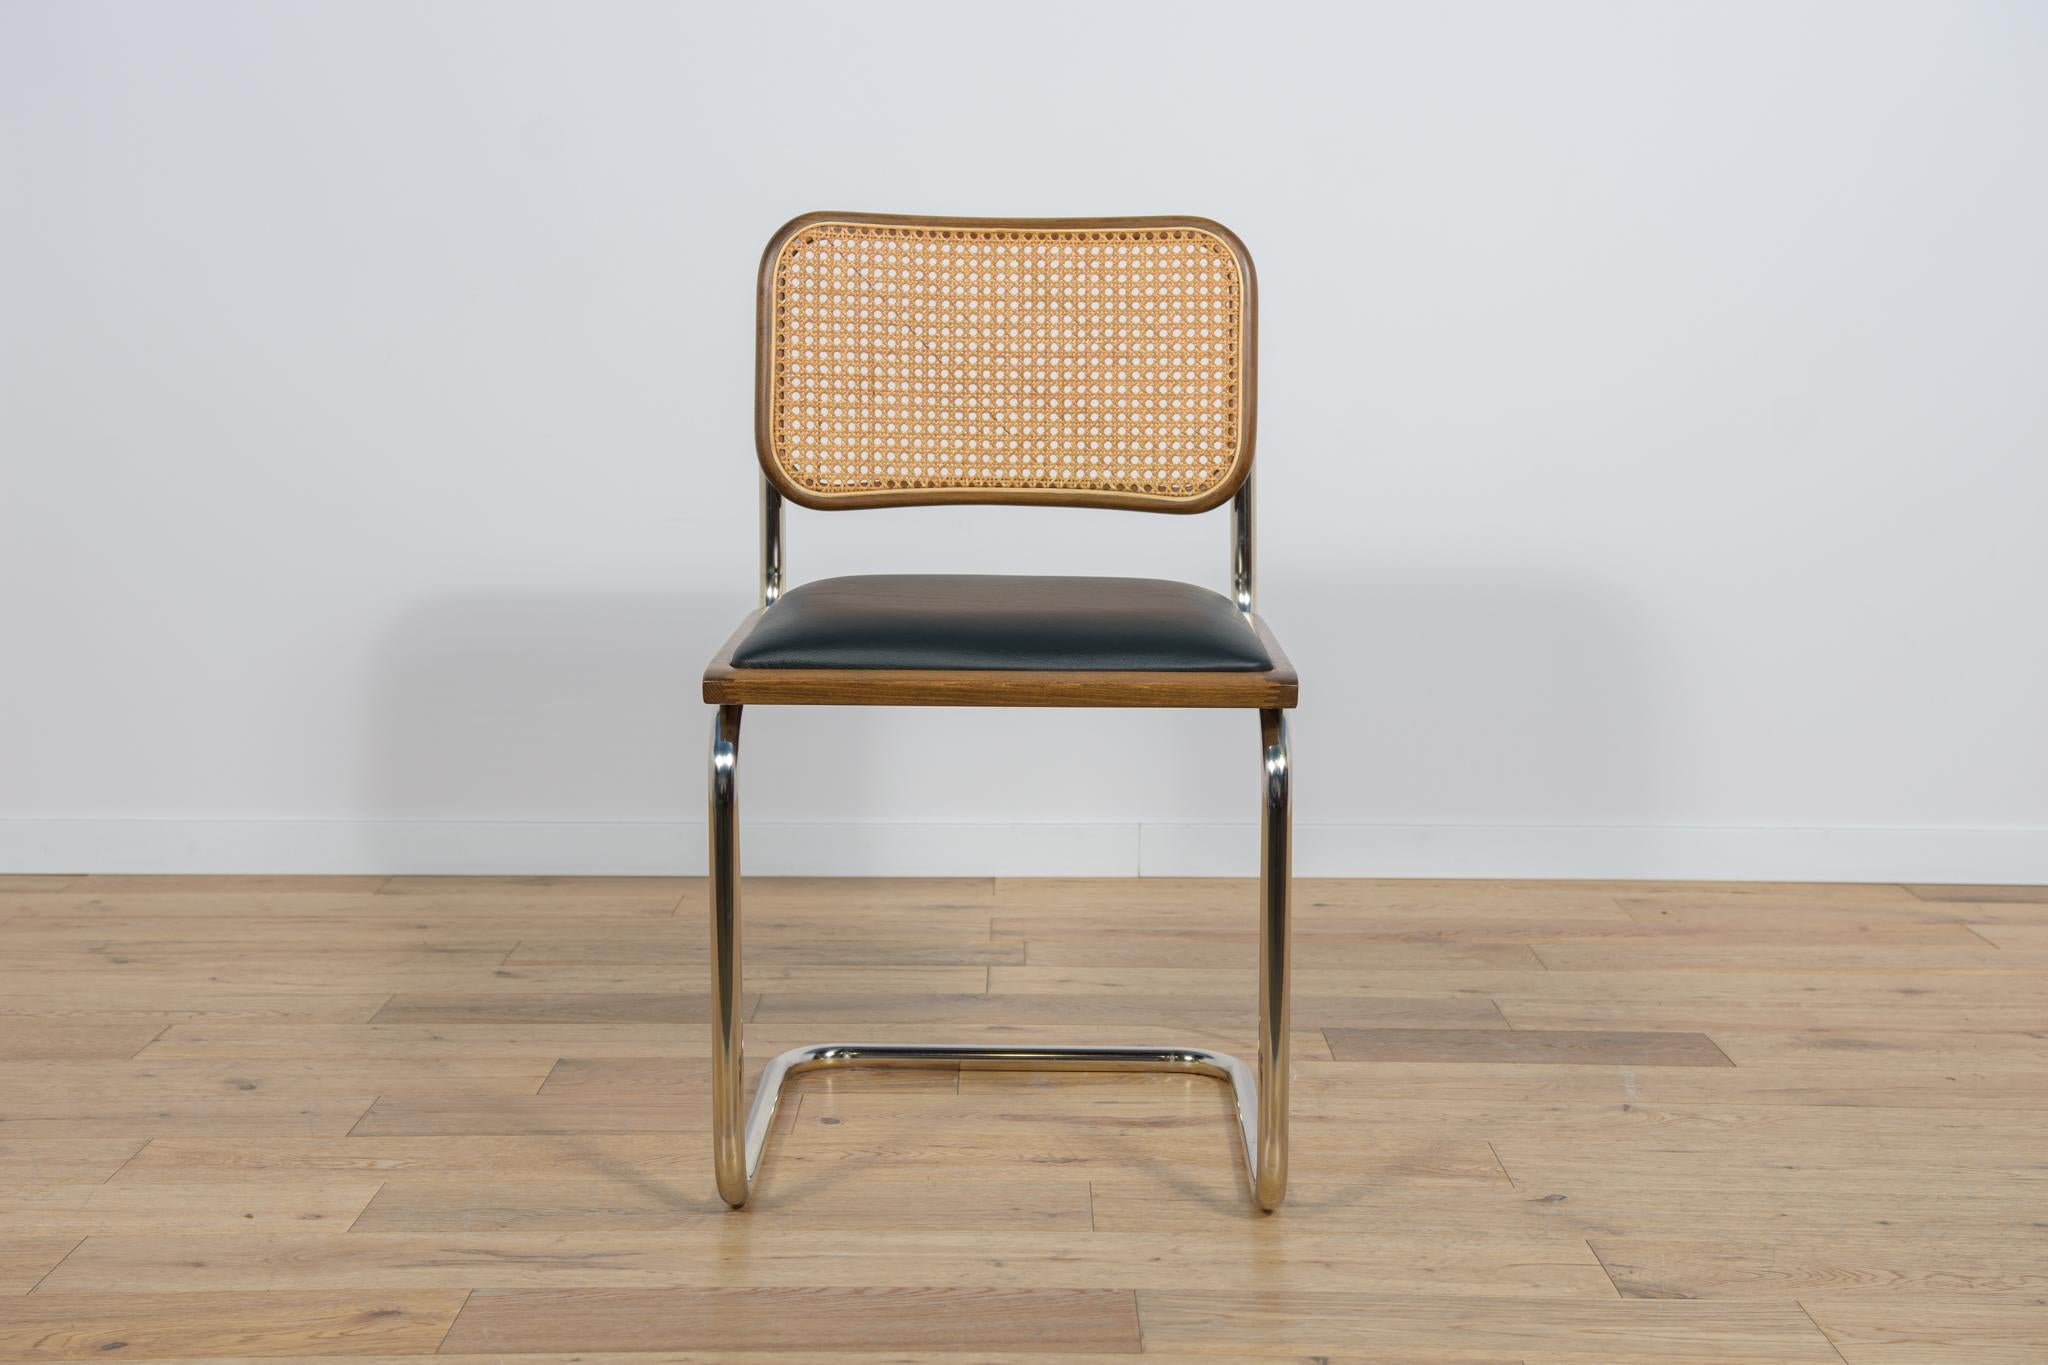 Chaise de type Cesca, inspirée d'un modèle de Marcel Breuer datant de 1928. Produit dans les années 1980. Le cadre chromé est en très bon état d'origine, il a été nettoyé et poli. La menuiserie a été rénovée par des professionnels, le bois de Beeche